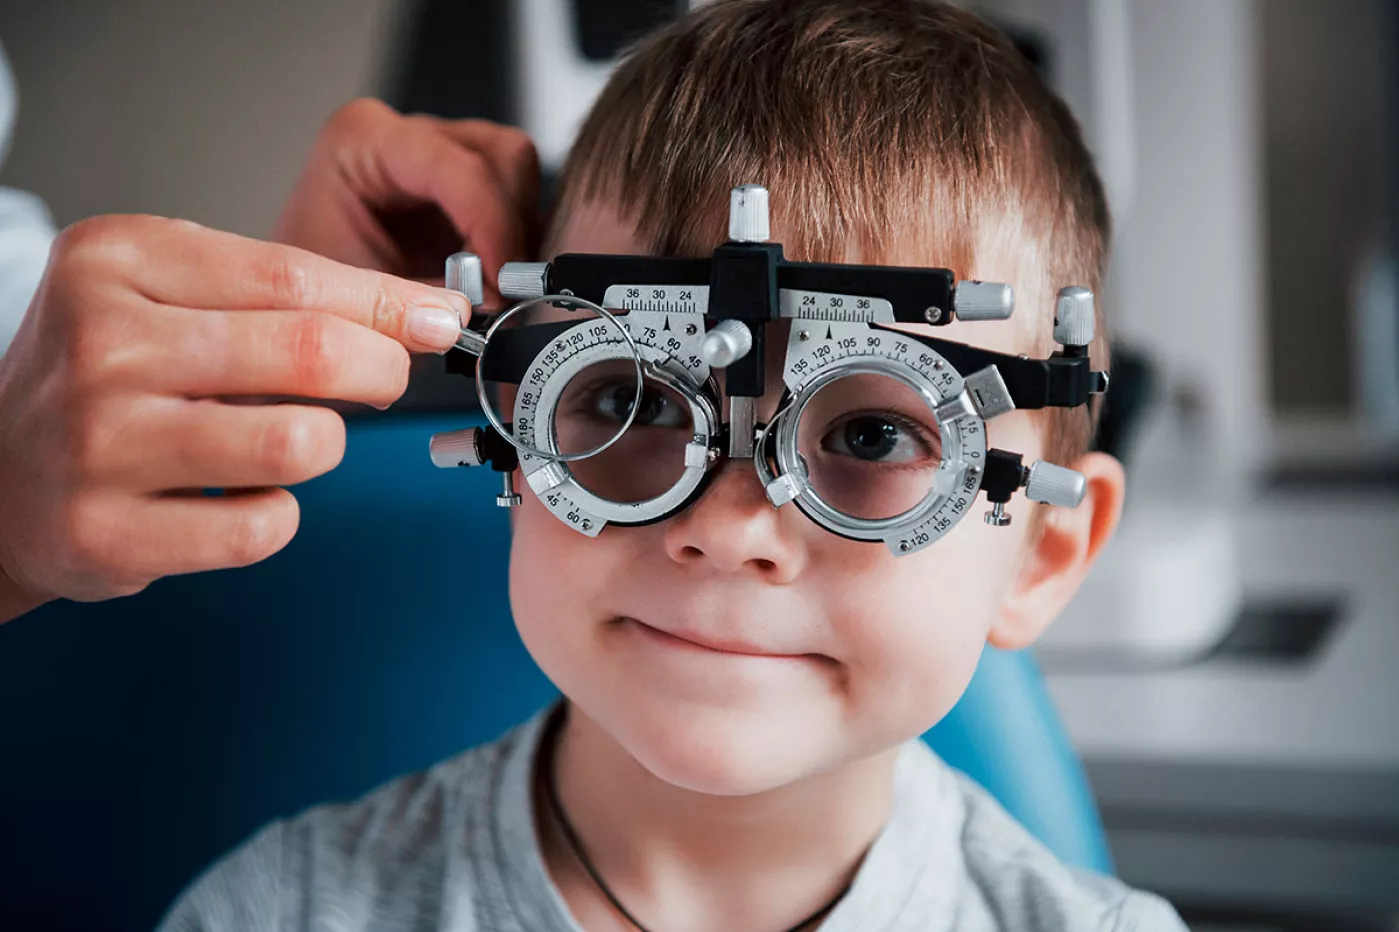 Desde el CNOO recomiendan evaluar el sistema visual de los menores con mayor frecuencia cuando ya se han identificado defectos refractivos, ambliopía, estrabismo o alteraciones de la relación acomodación-convergencia.